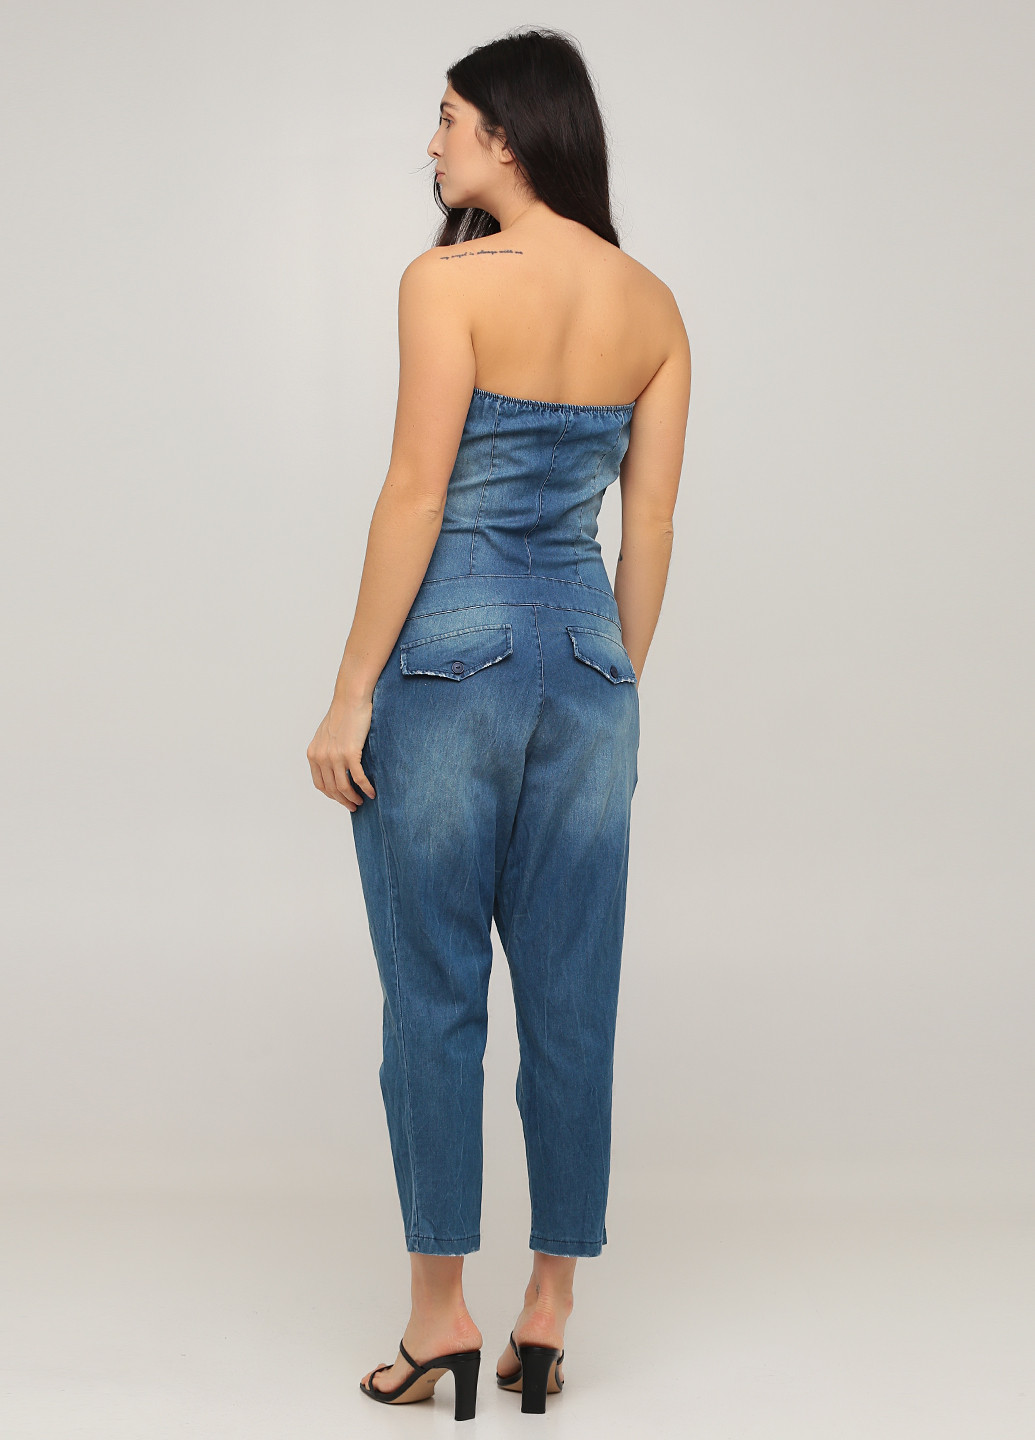 Комбінезон Queguapa комбінезон-брюки однотонний синій джинсовий бавовна